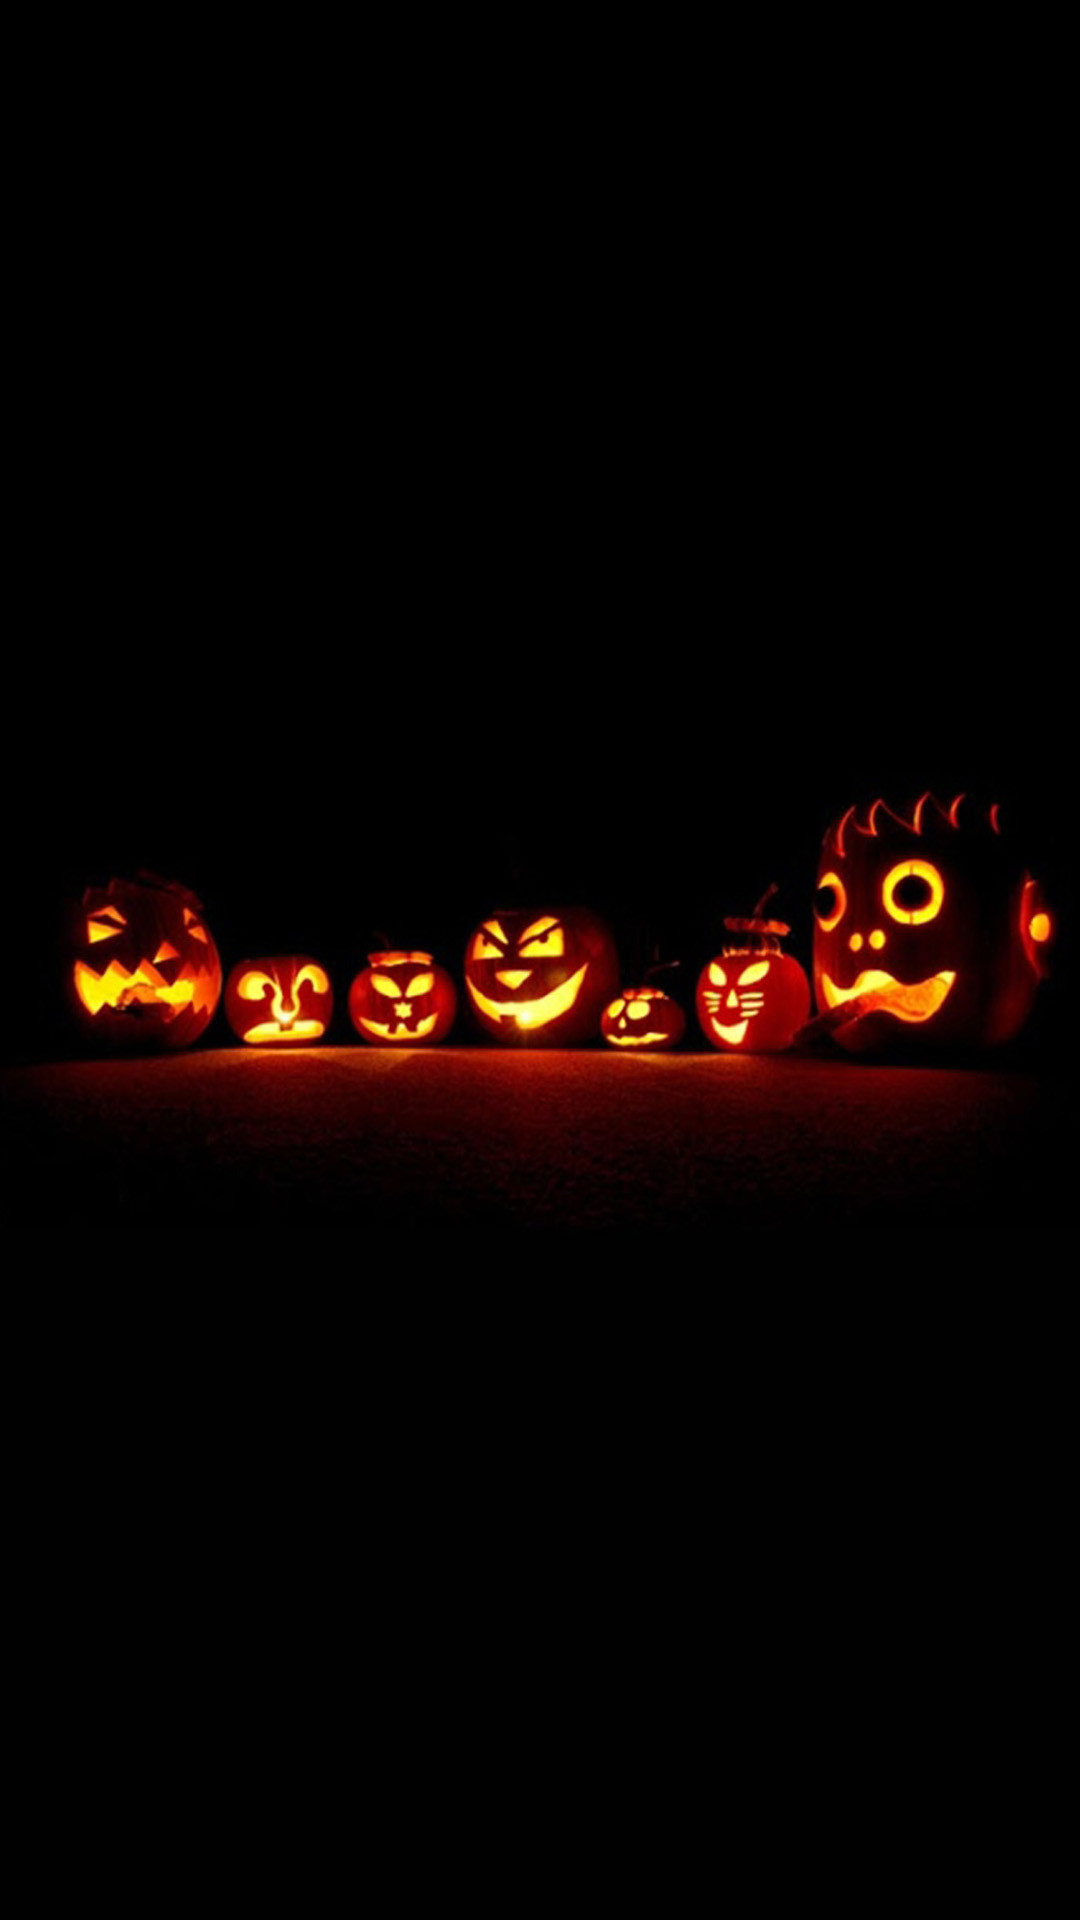 1080x1920 Glowing Pumpkins Halloween iPhone 6 & iPhone 6 Plus Wallpaper